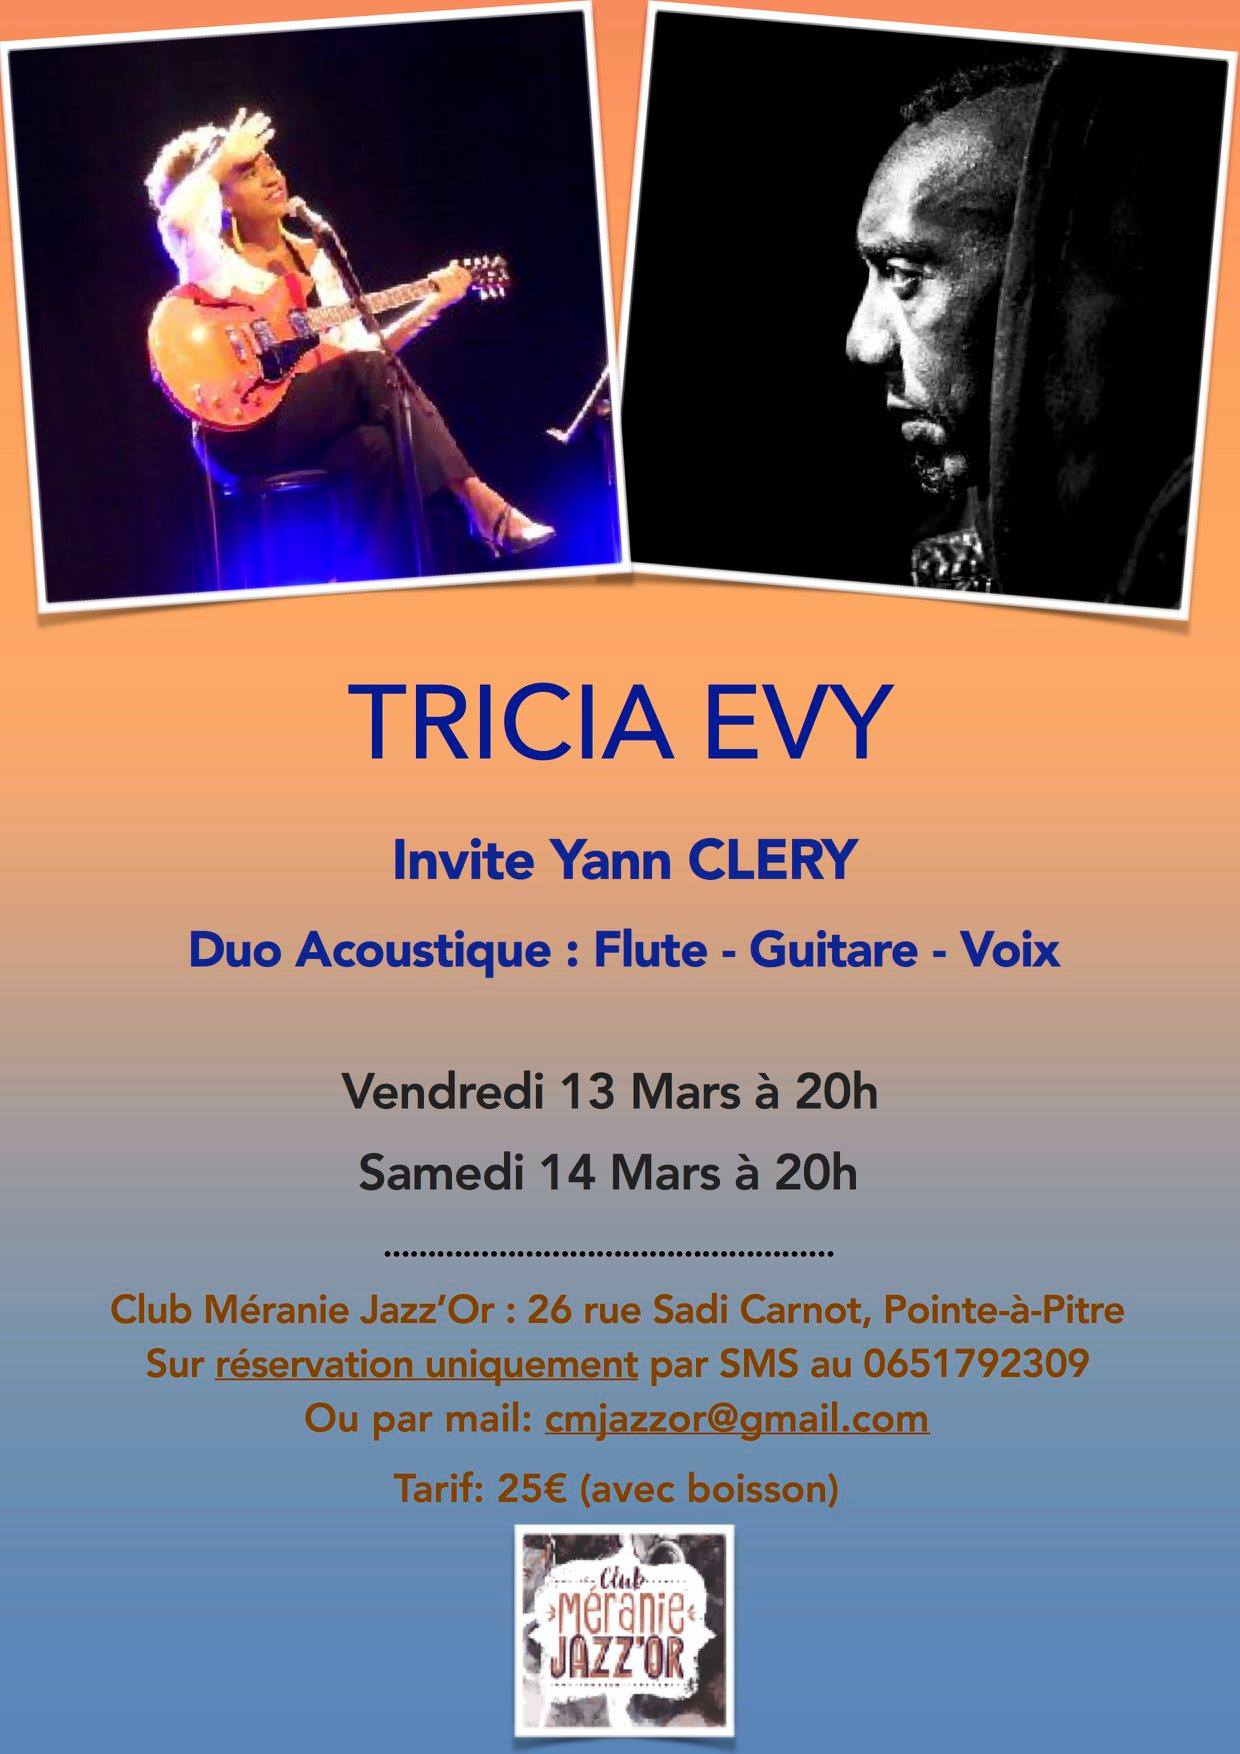 Tricia Evy invite Yann Cléry